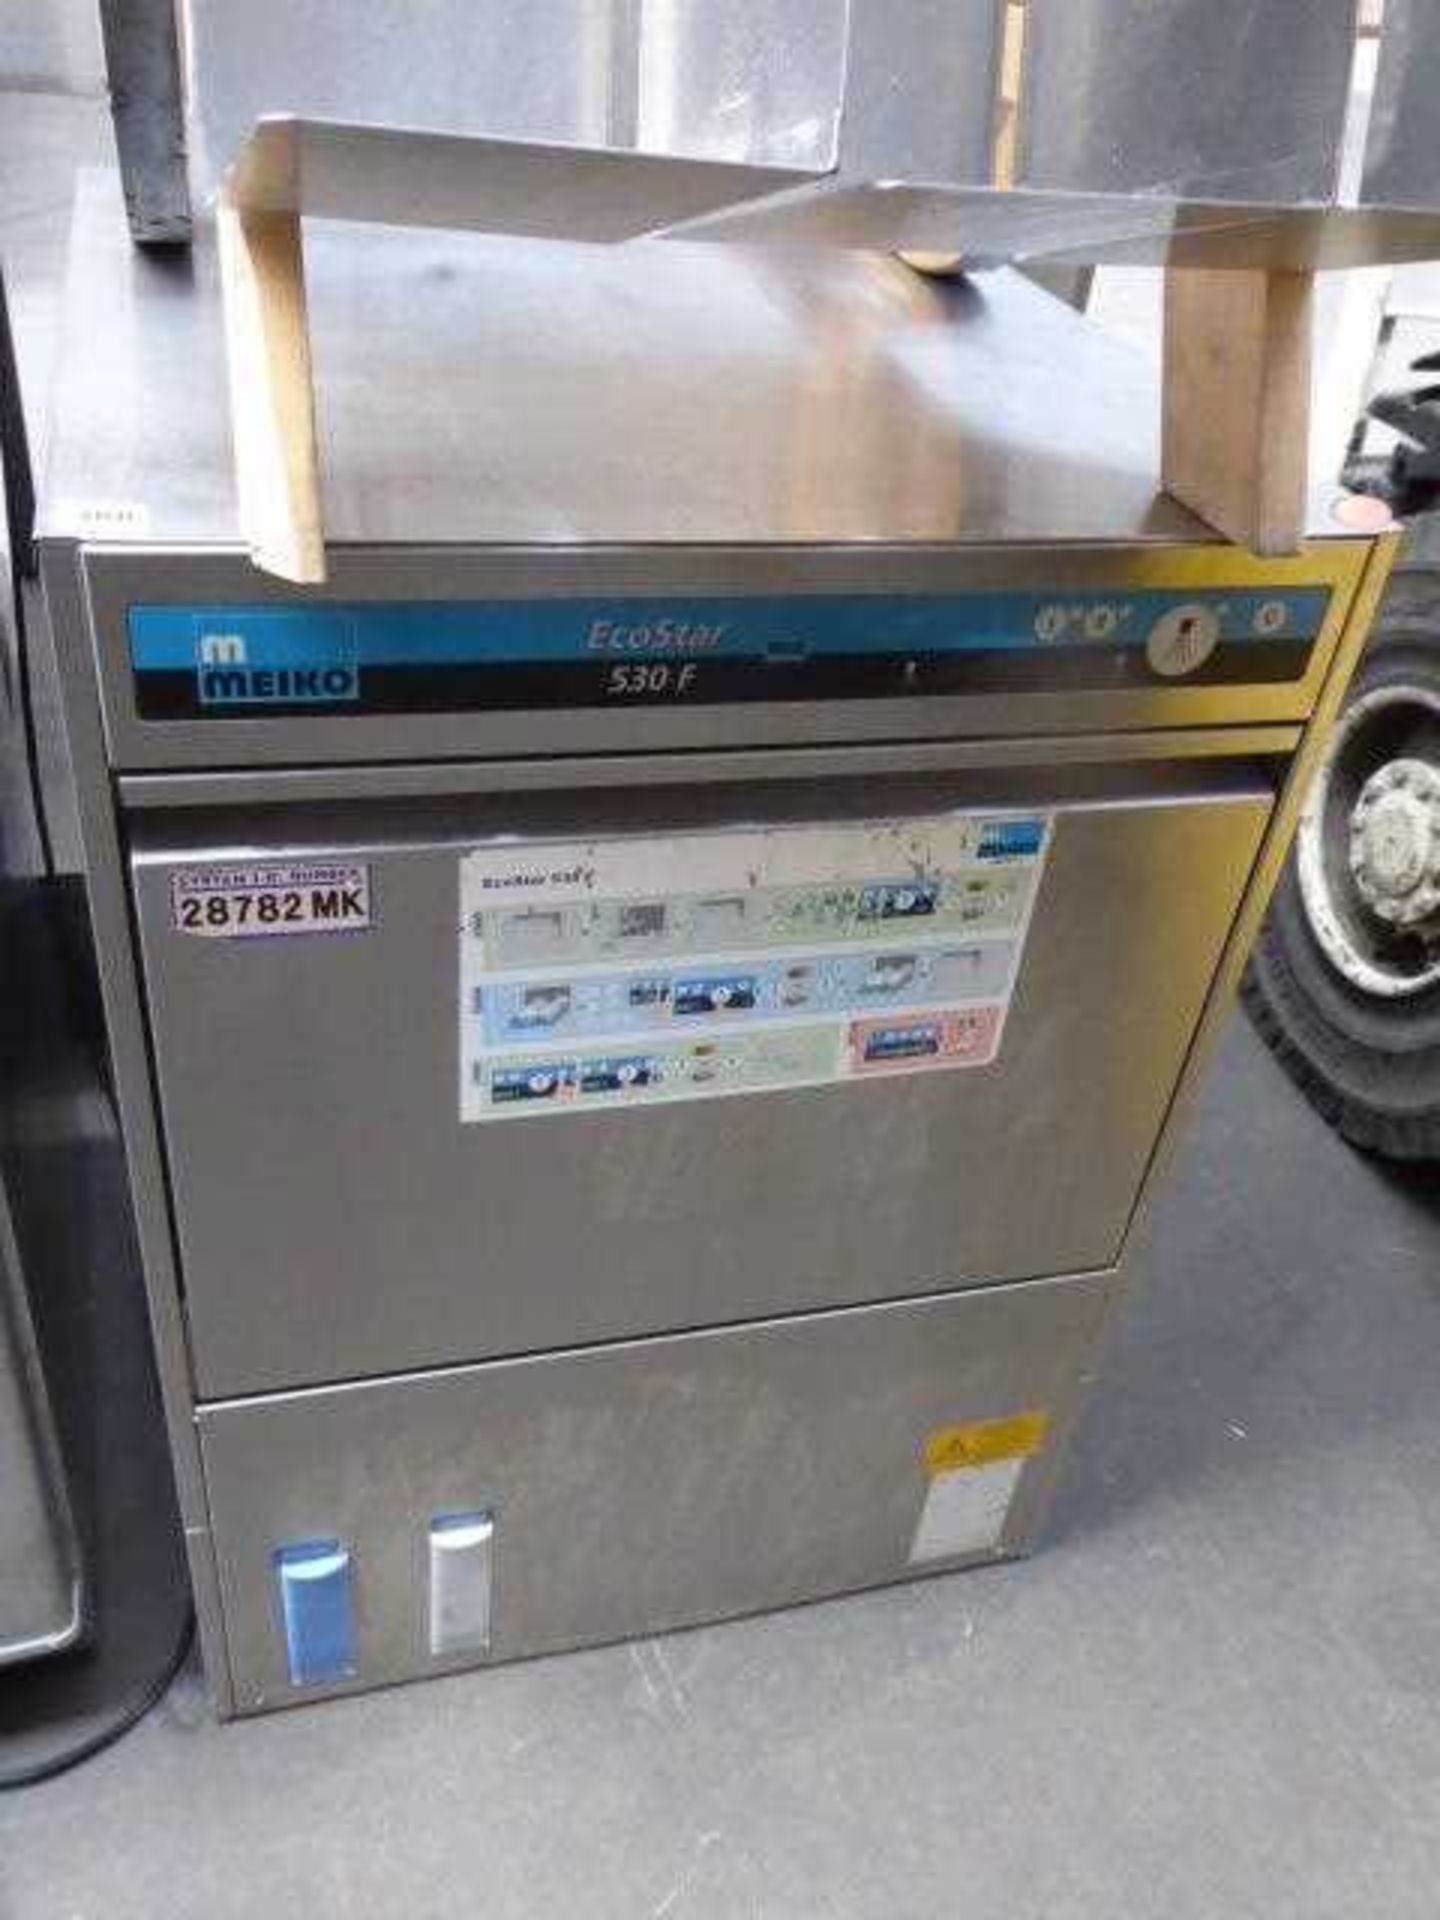 60cm Meiko Ecostar 530F under counter drop front dishwasher